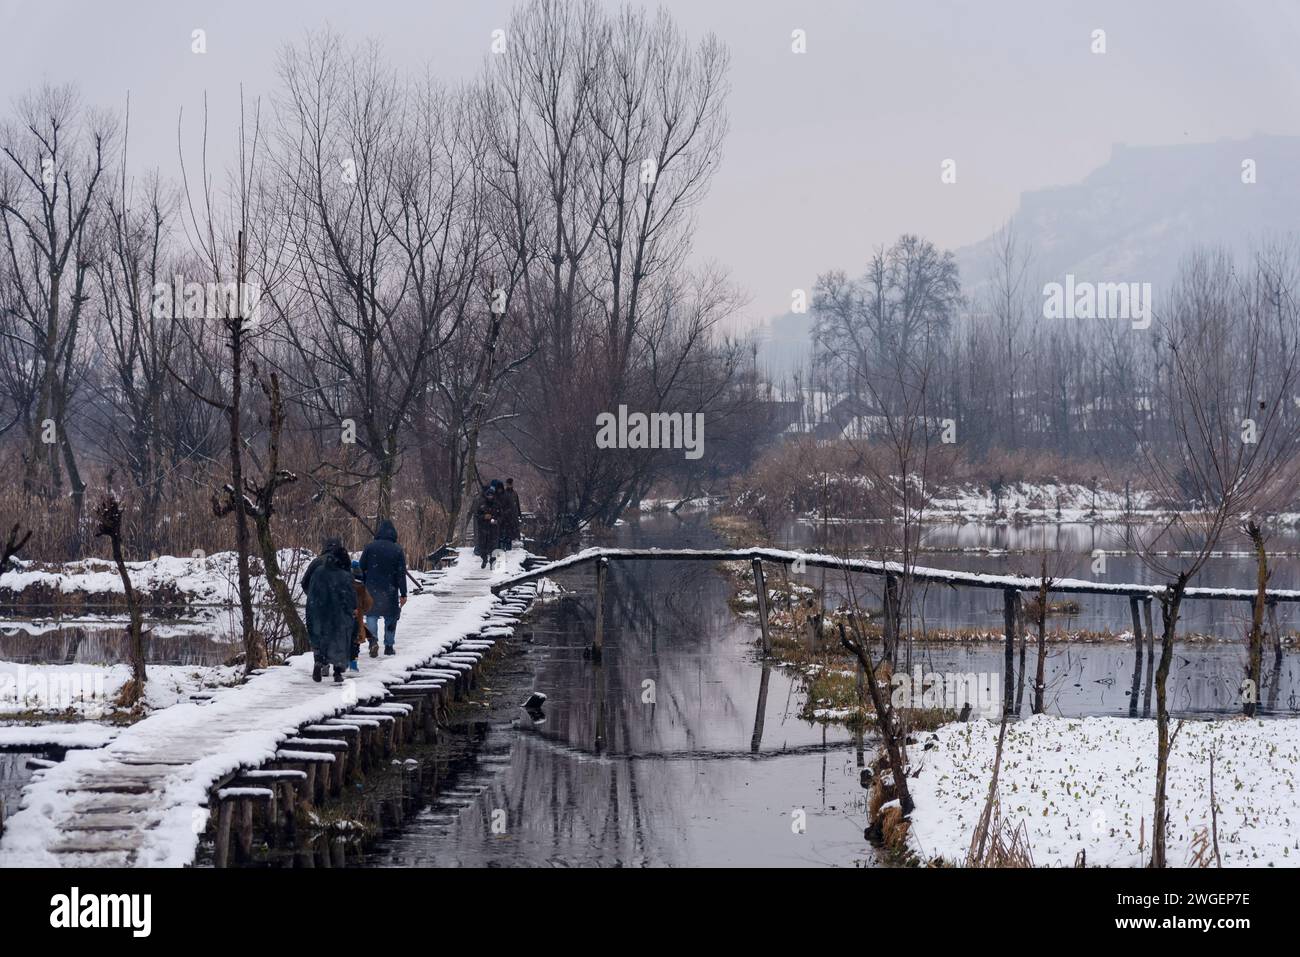 Le persone camminano su un ponte innevato durante le nevicate. Le pianure del Kashmir stanno assistendo a una moderata nevicata, mentre nei tratti più alti della valle sono state segnalate forti nevicate. La valle del Kashmir ha subito una nevicata fresca che ha sconvolto la normale vita delle persone. Le operazioni di volo, il trasporto di superficie e le attività di routine della vita si arrestarono. Foto Stock